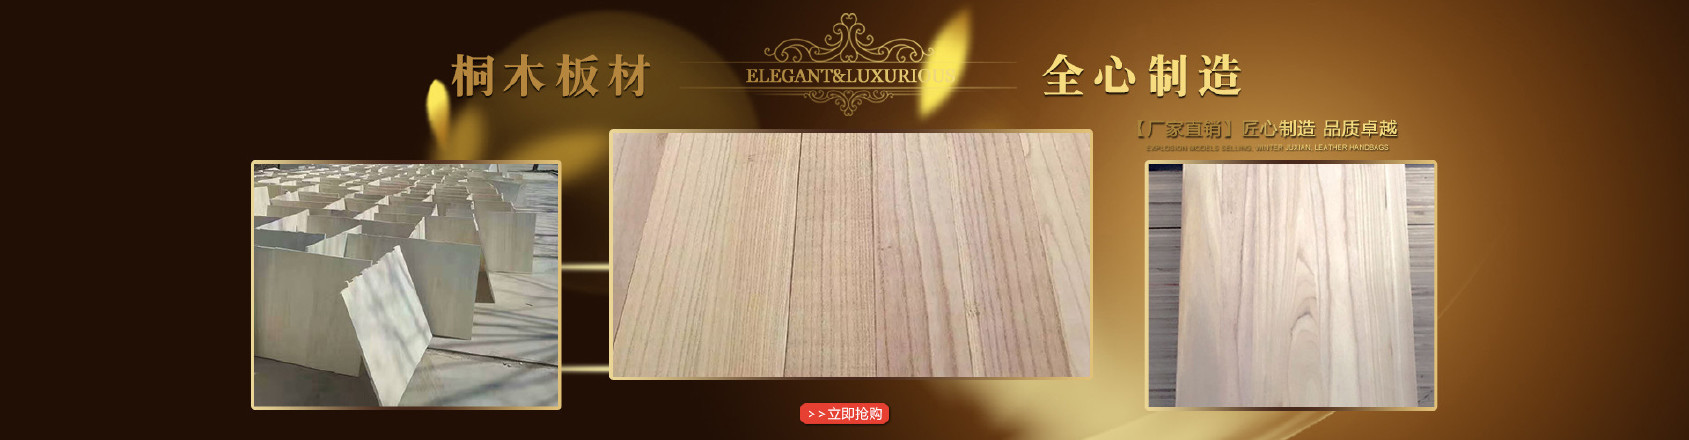 厂家生产供应梓木拼板 实木梓木板材 多规格低碳环保梓木拼板示例图1